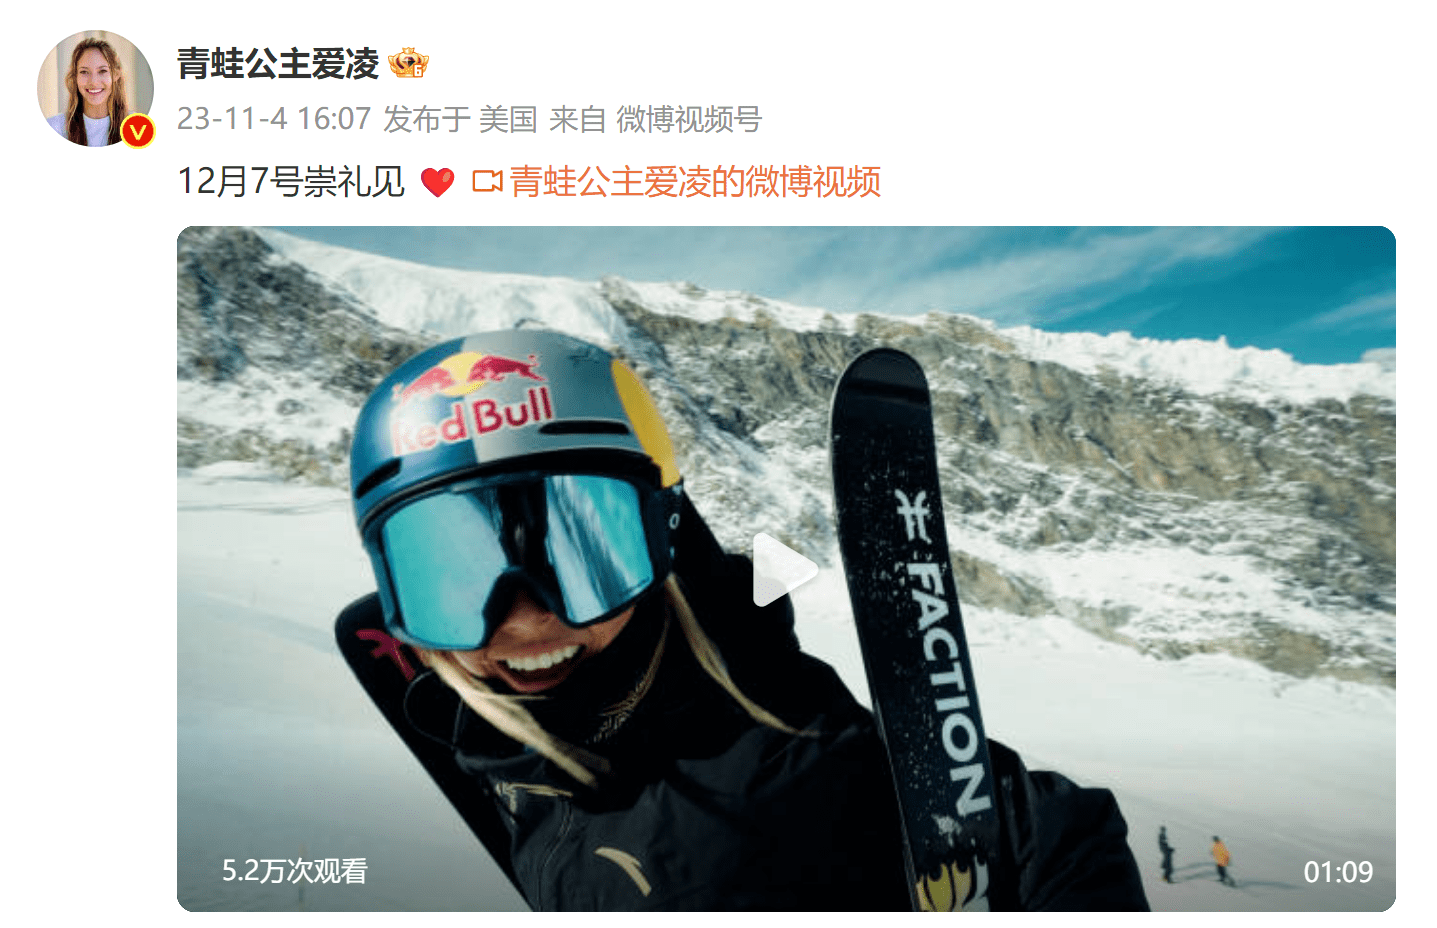 谷爱凌发博官宣将参加12月世界杯崇礼站自由式滑雪U型场地技巧比赛插图